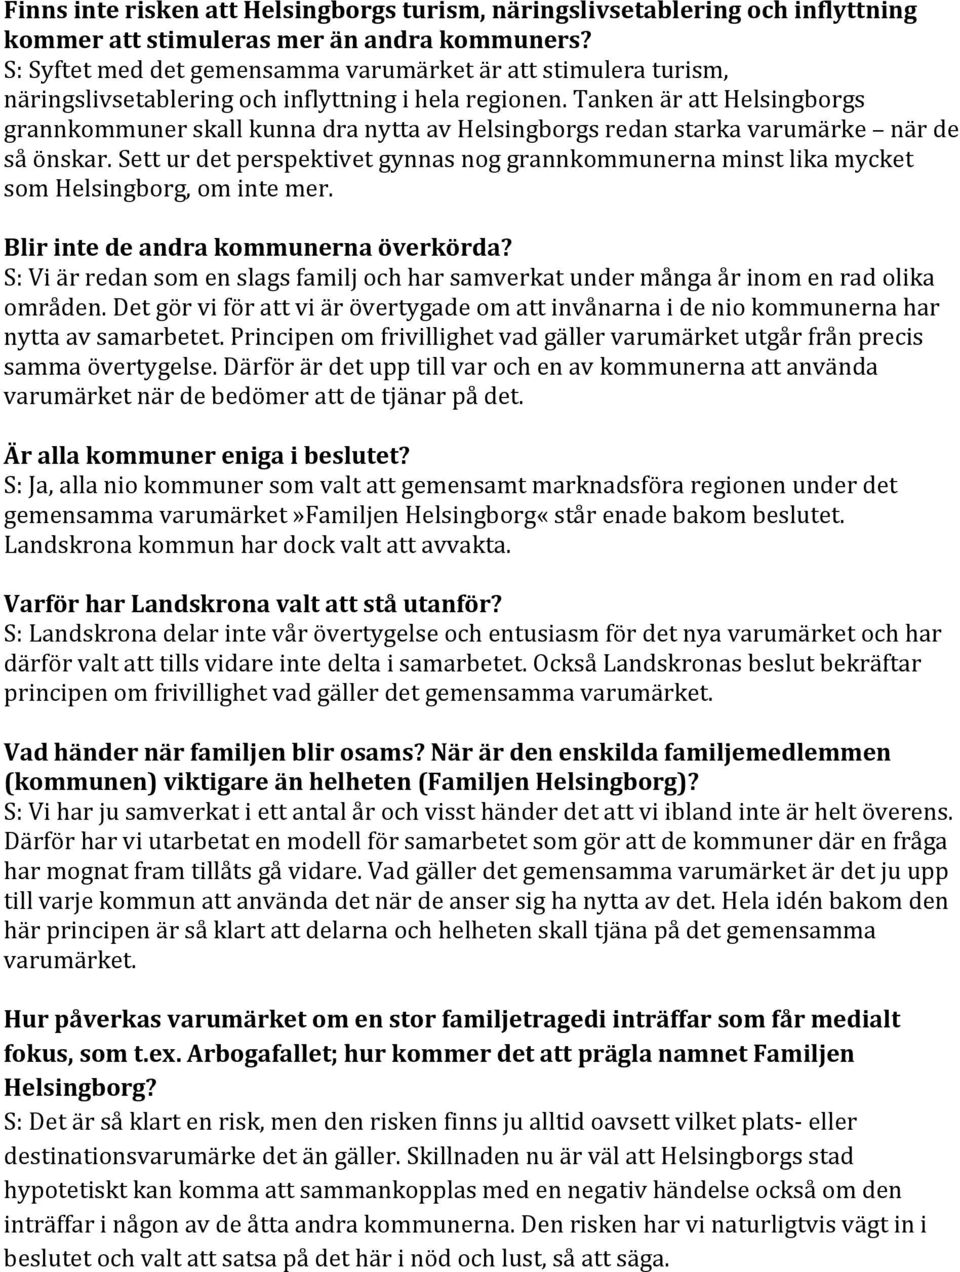 Tanken är att Helsingborgs grannkommuner skall kunna dra nytta av Helsingborgs redan starka varumärke när de så önskar.